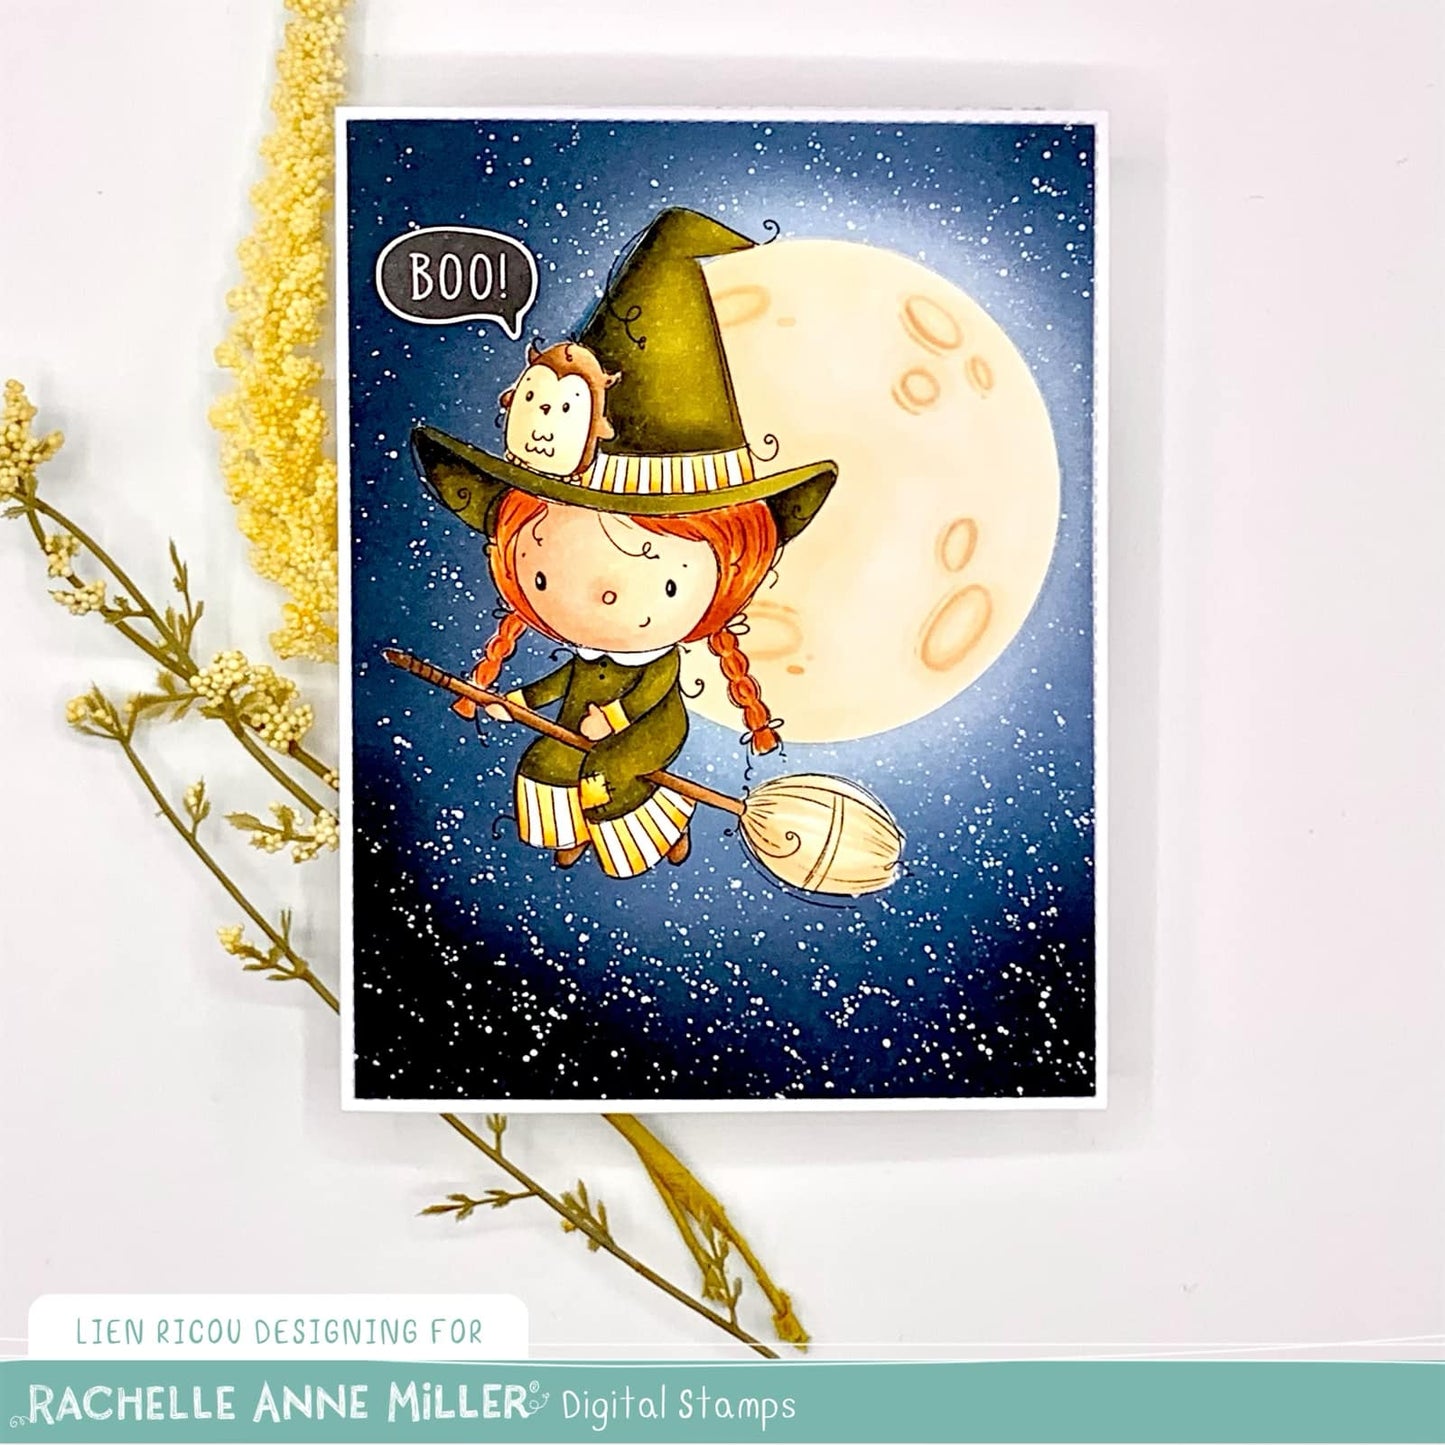 'Cute Witch' Digital Stamp